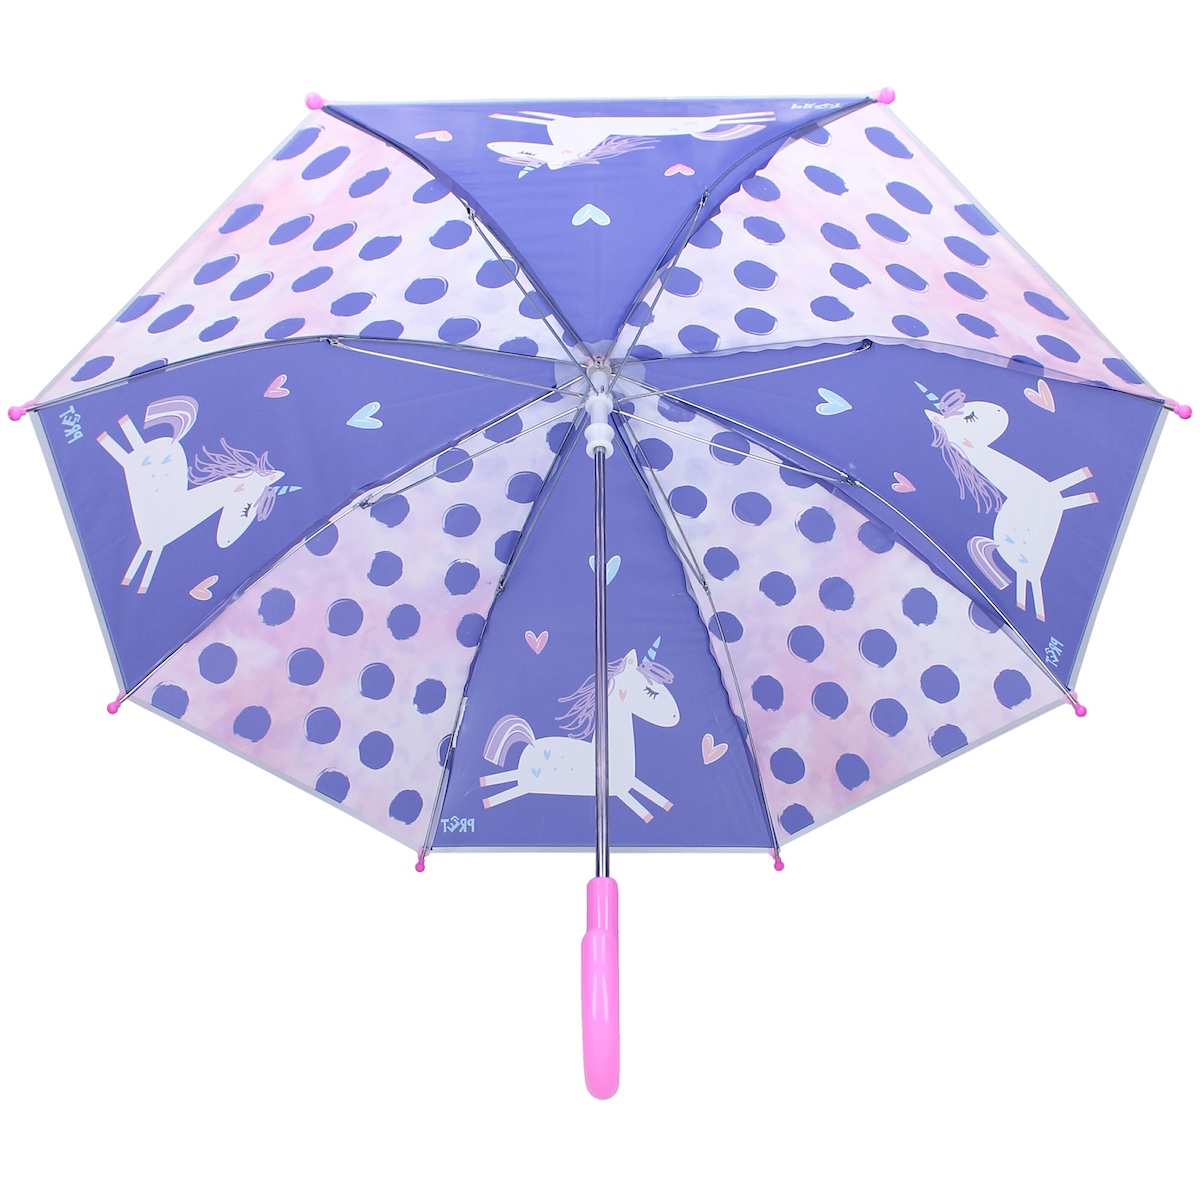 Regenschirm Pret Don't Worry About Rain Einhorn Schirm